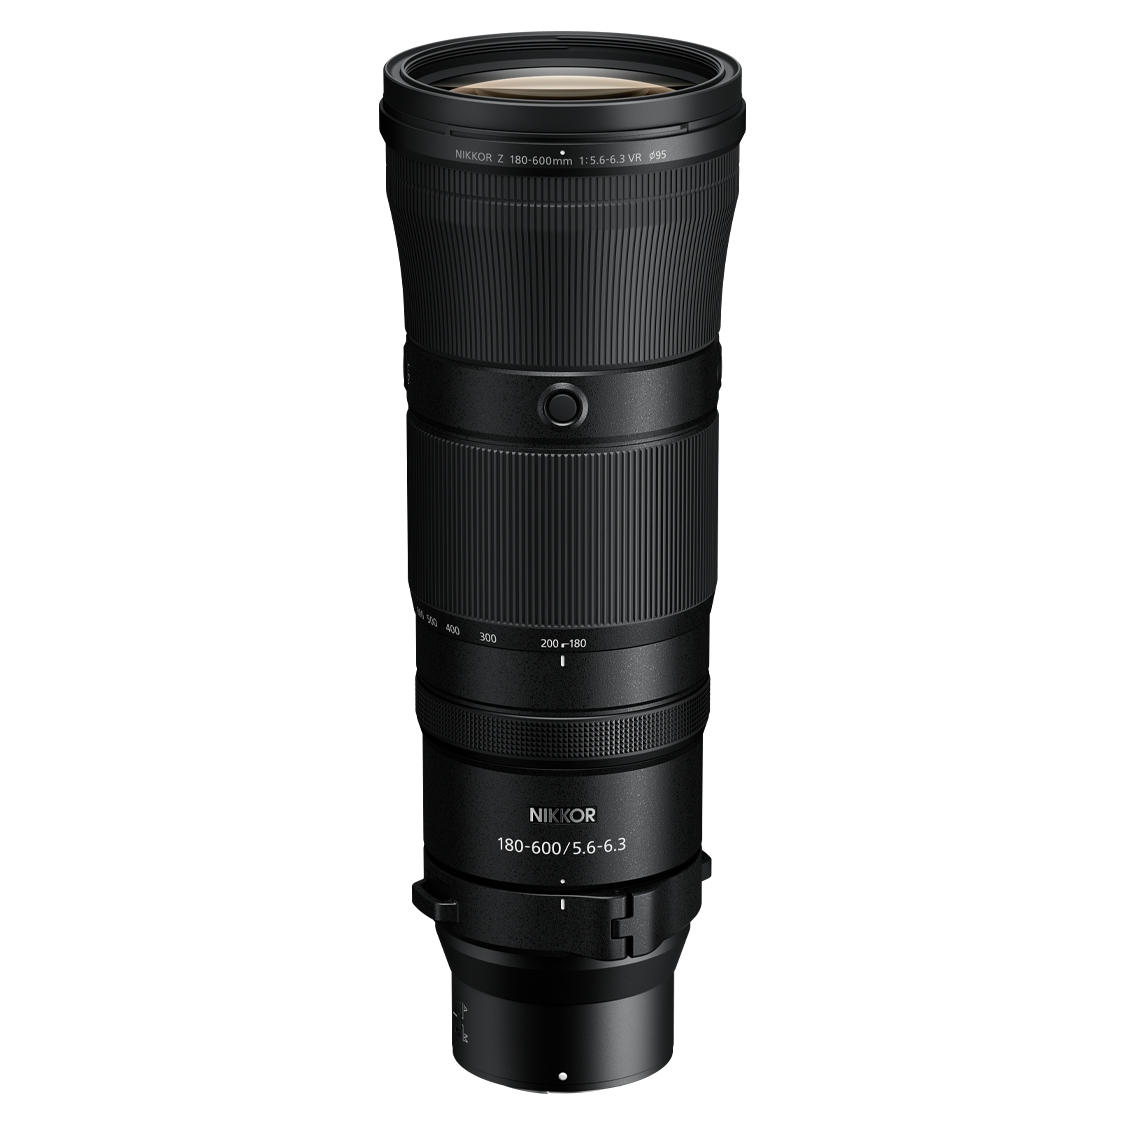 Nikon Z 180-600mm F5.6-6.3 VR Lens